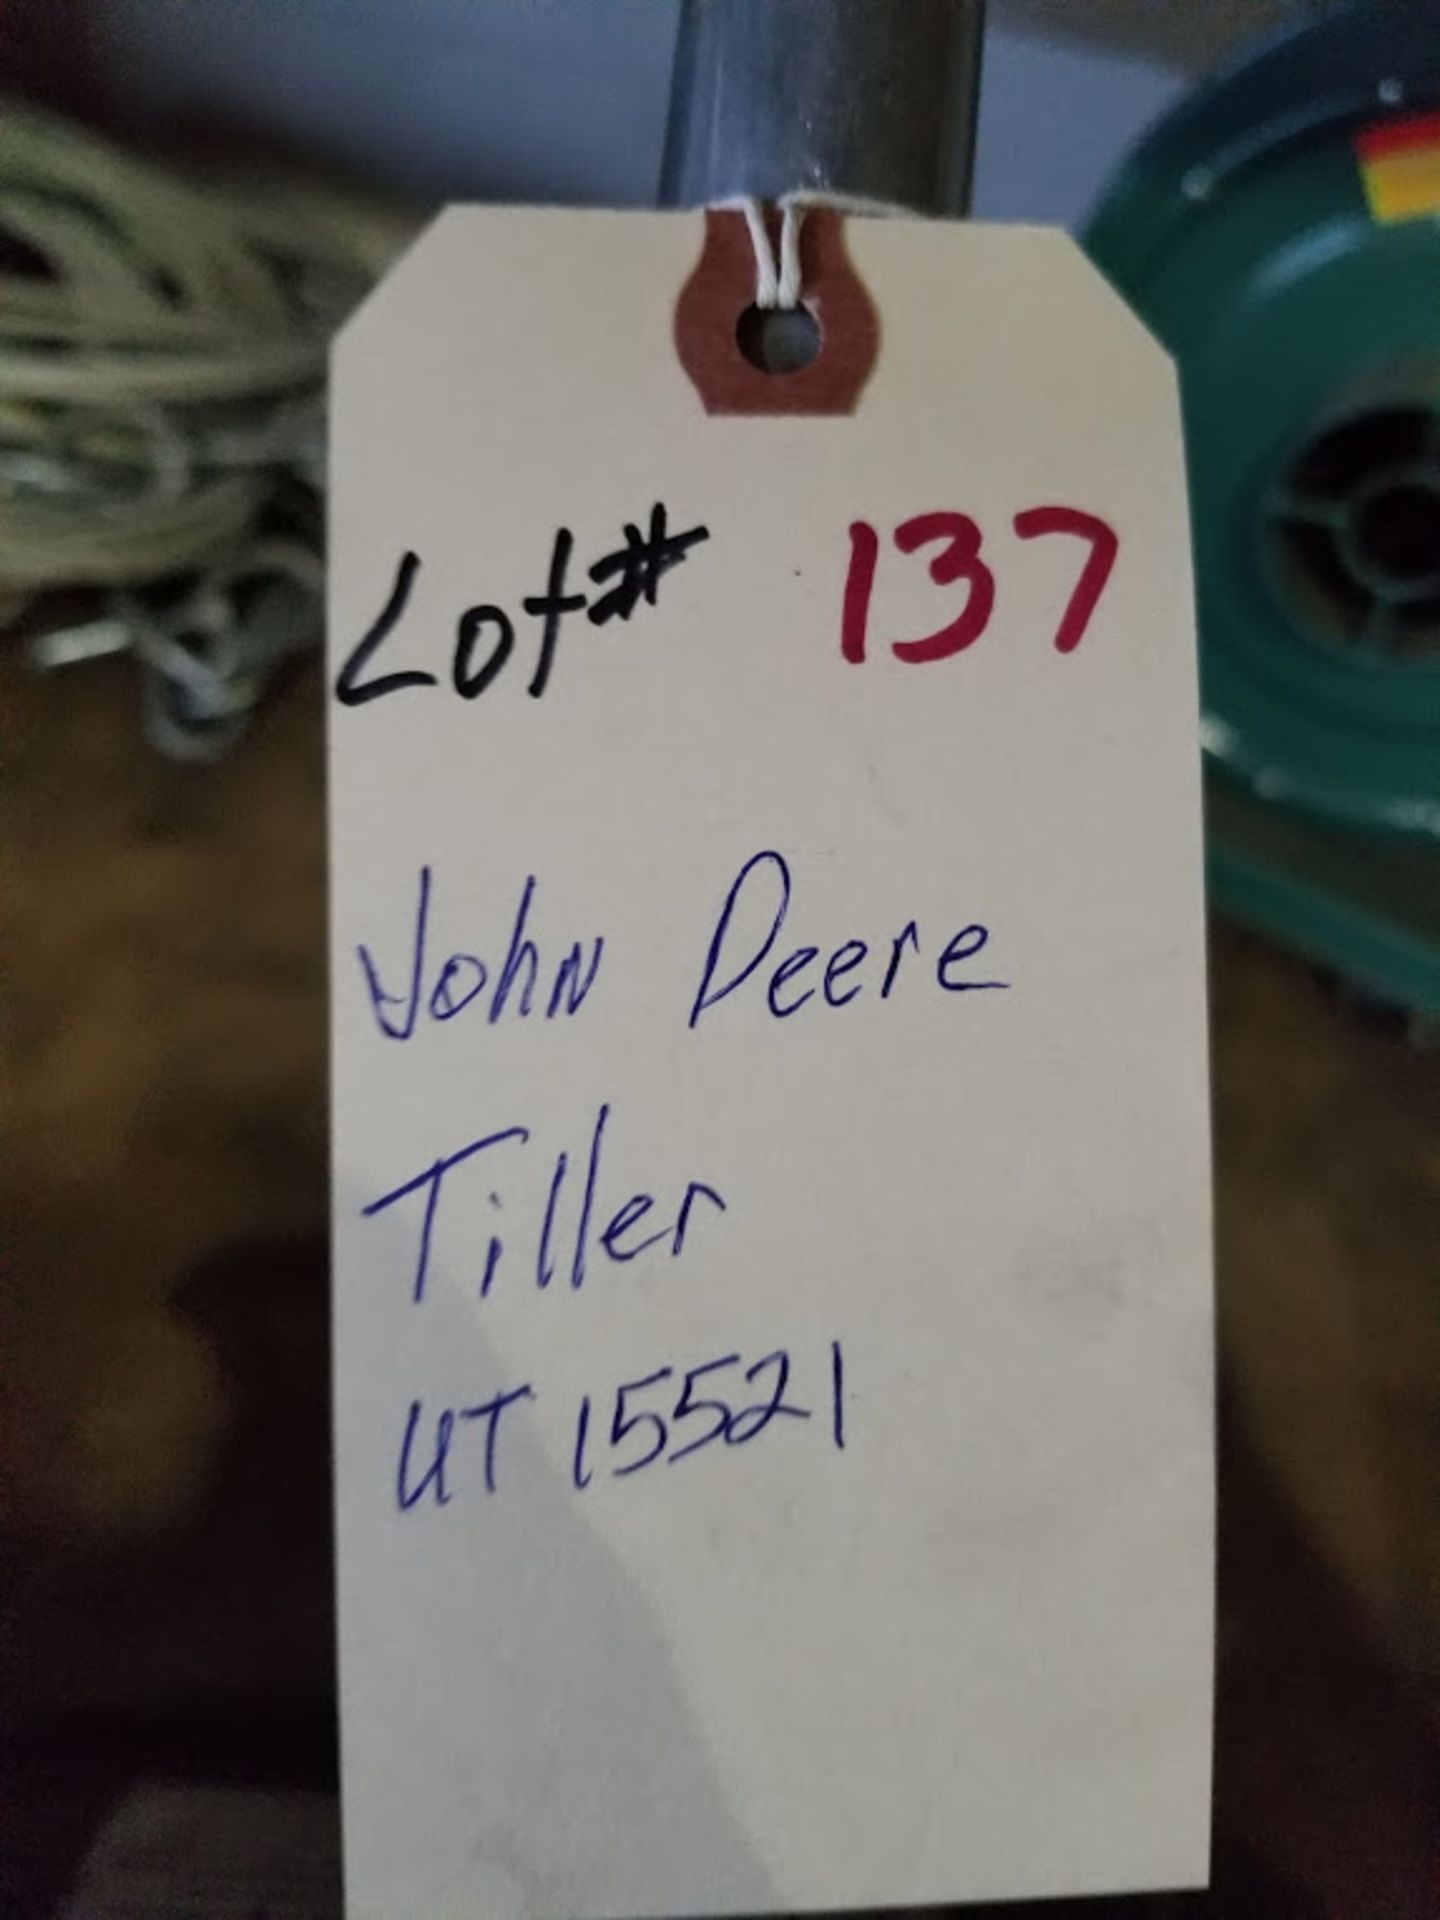 John Deere Tiller, Model #UT 15521 - Image 2 of 2